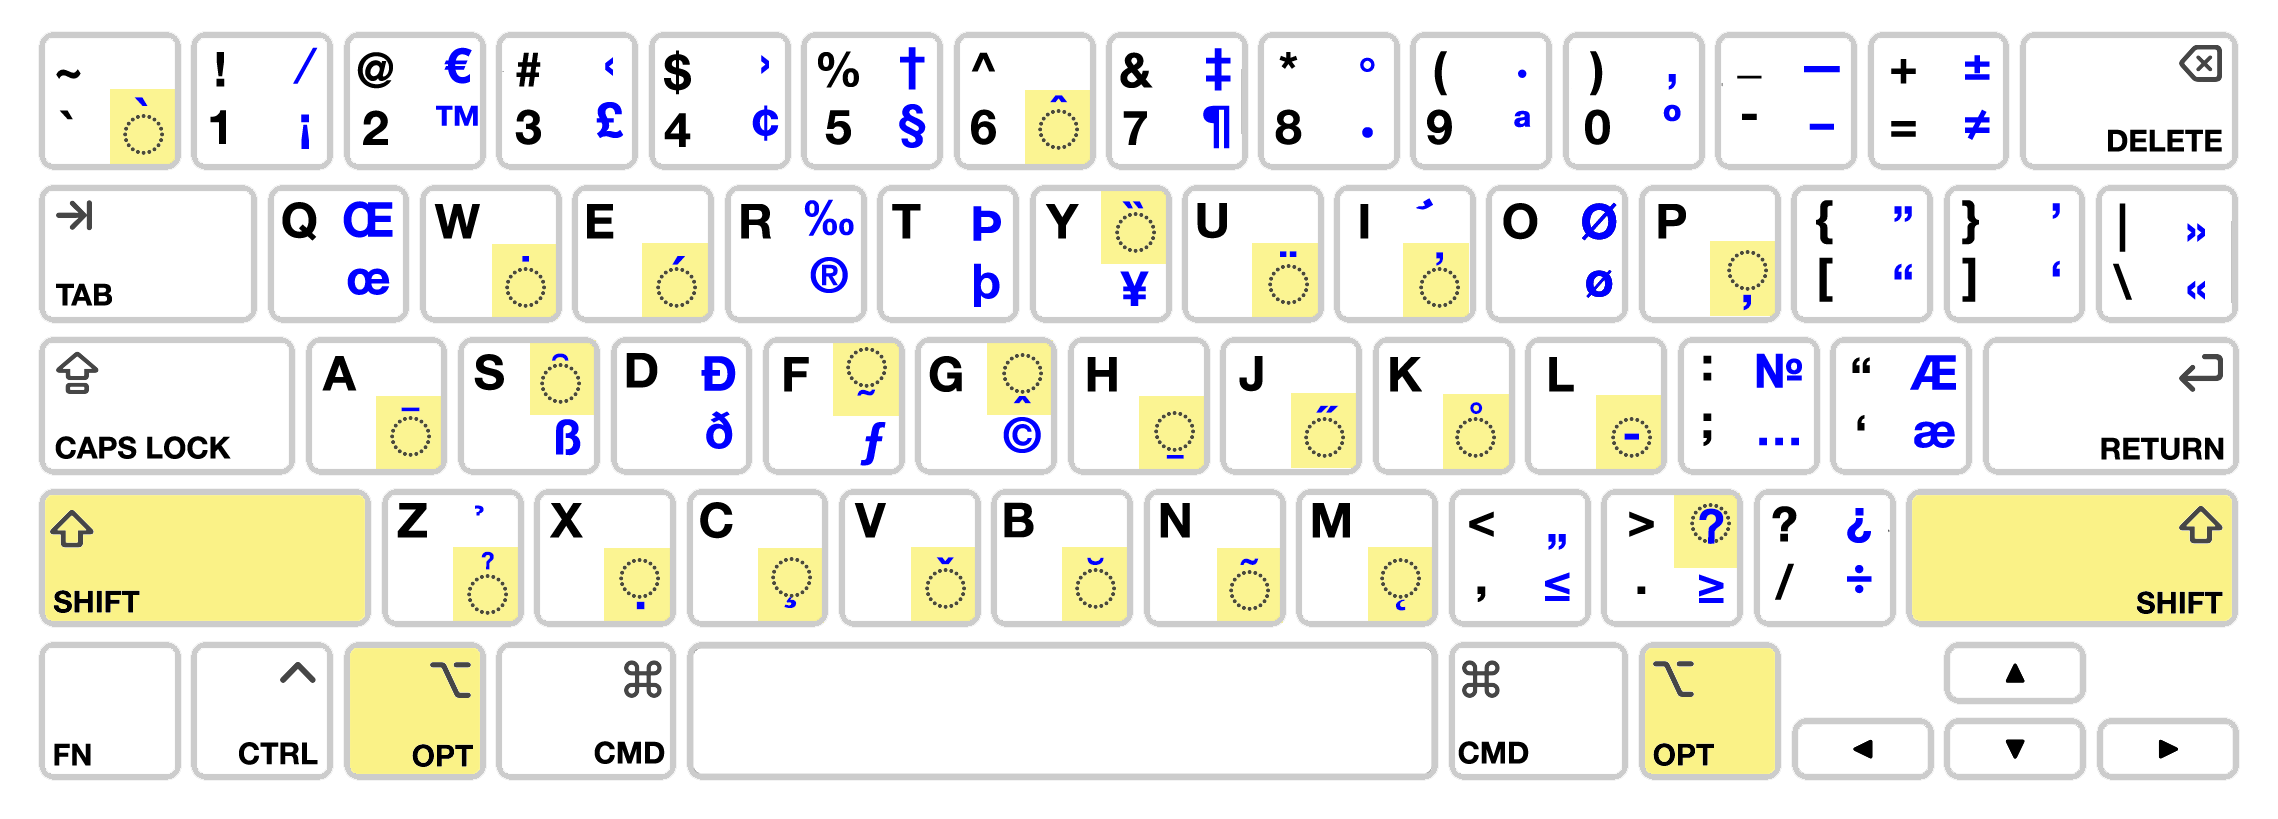 Apple Keyboard Layout